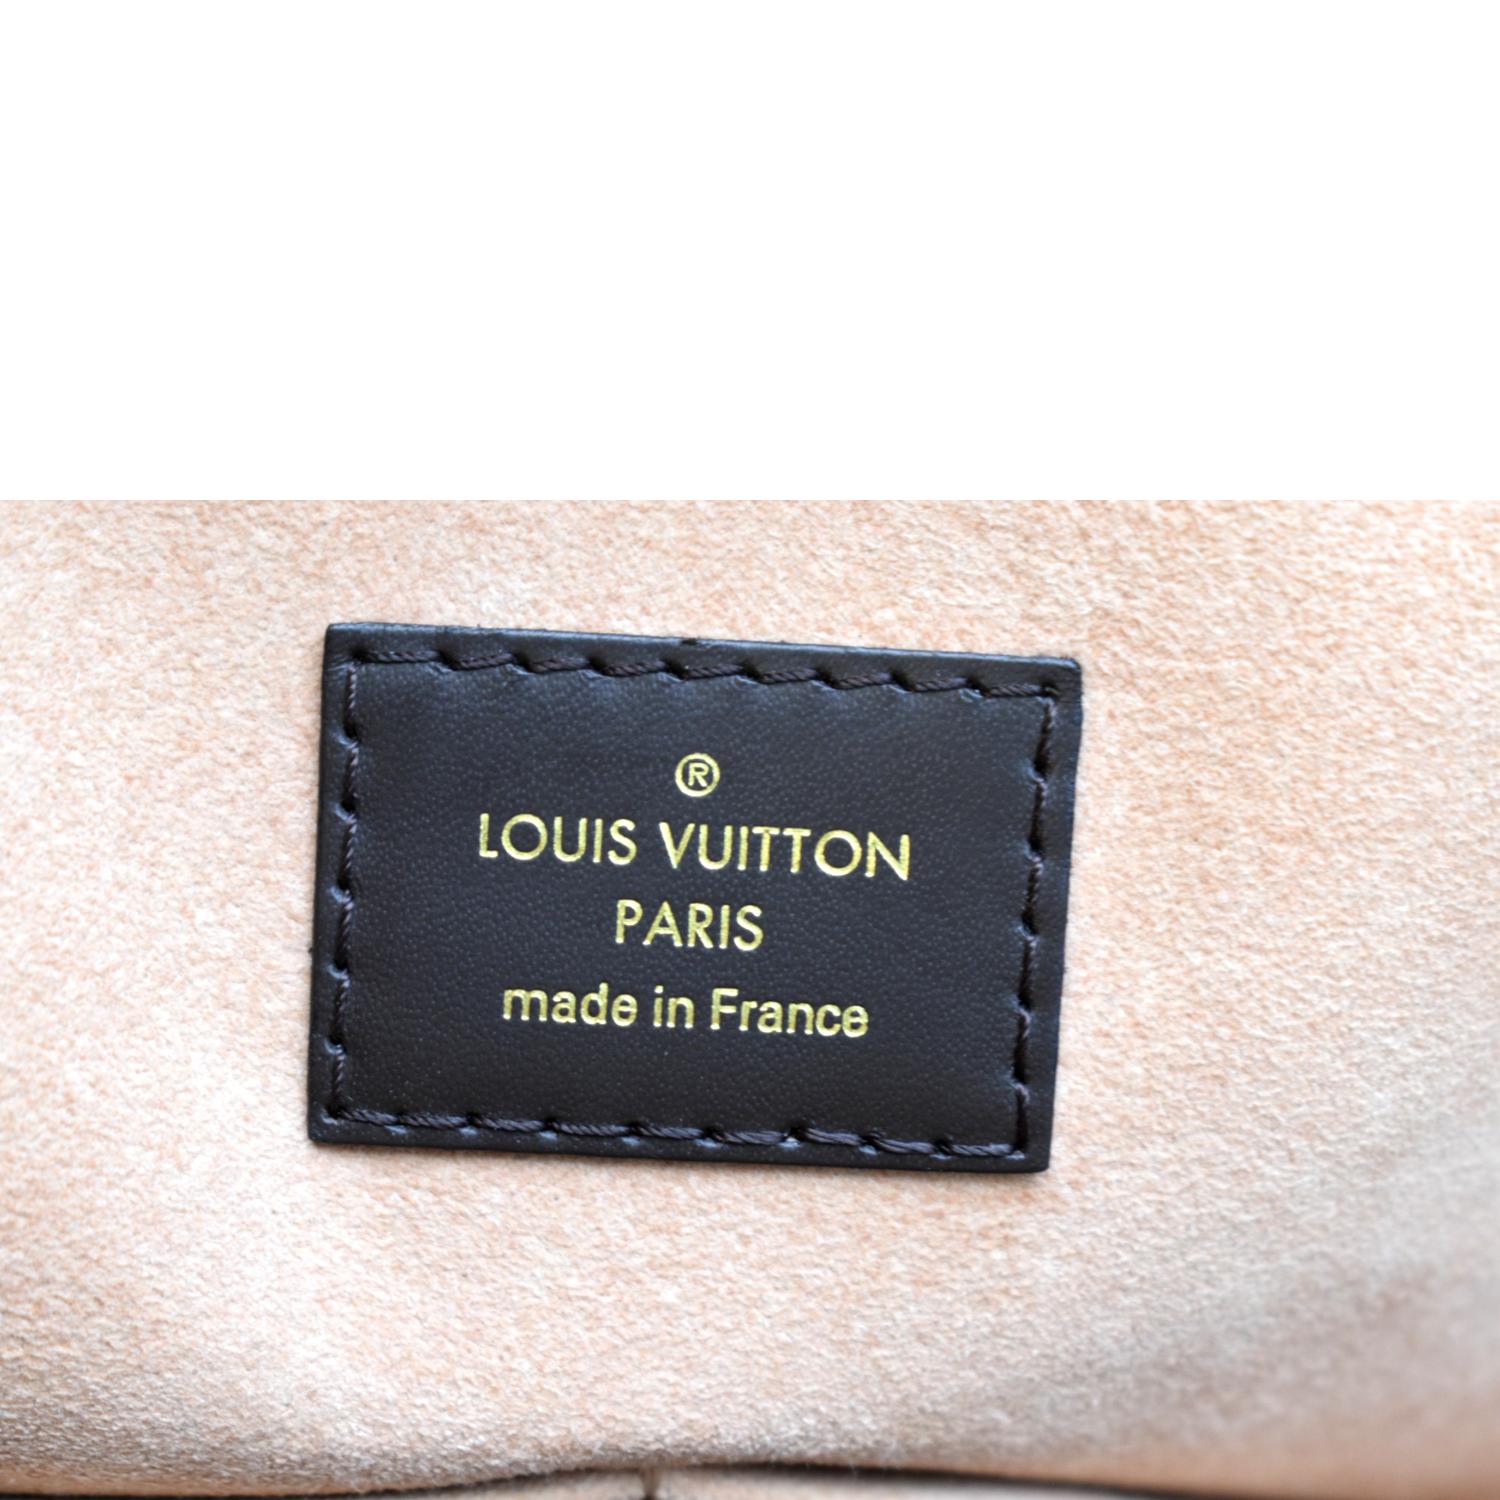 Kensington cloth bowling bag Louis Vuitton Brown in Cloth - 23792405